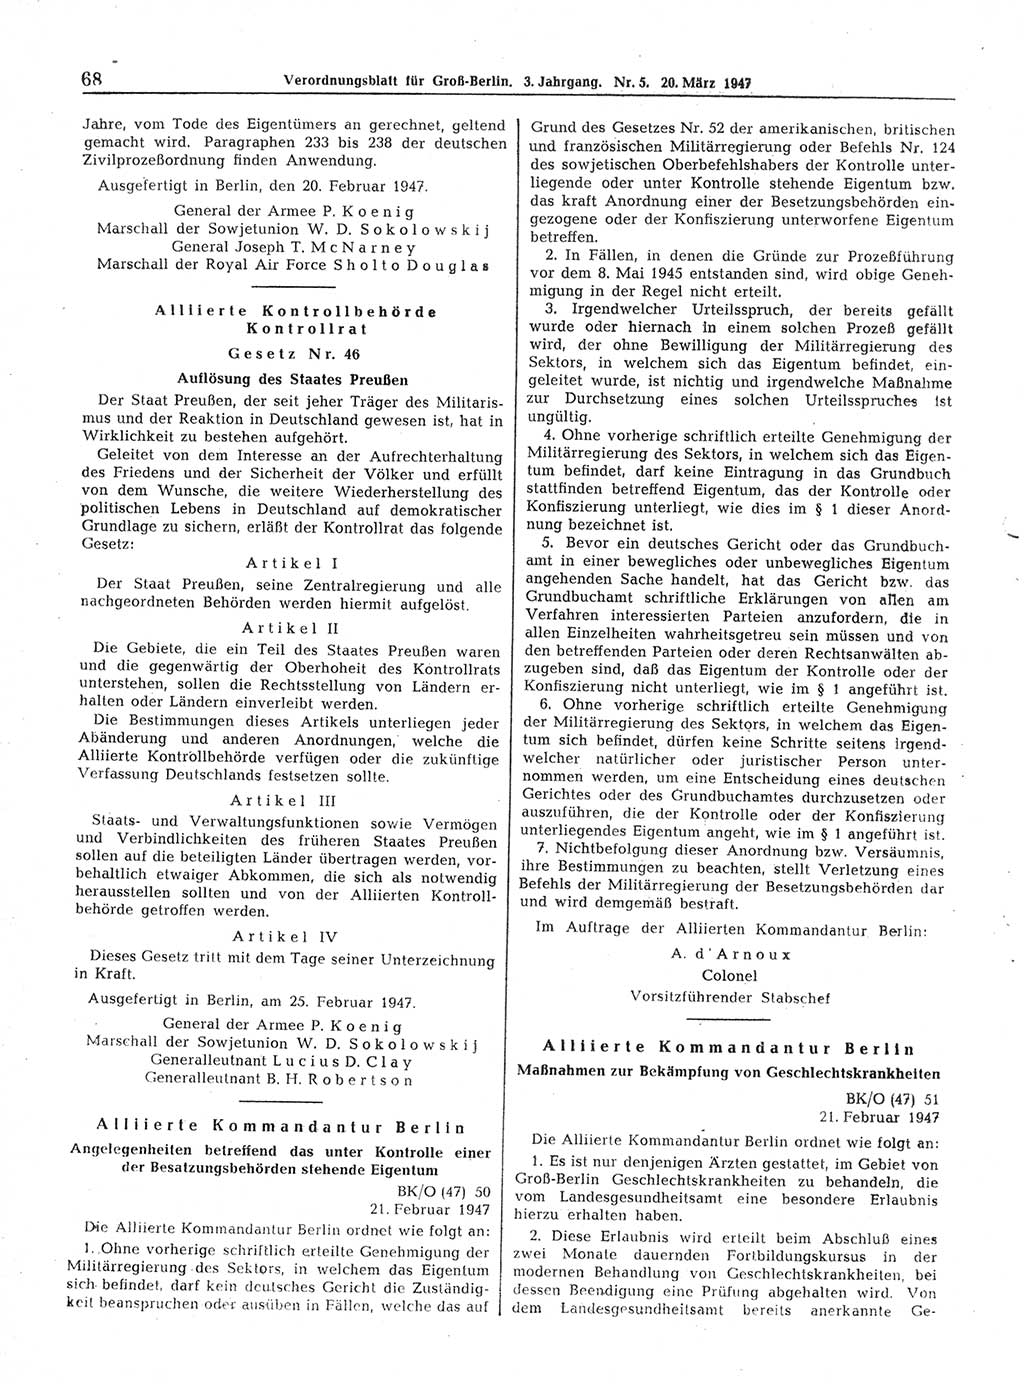 Verordnungsblatt (VOBl.) für Groß-Berlin 1947, Seite 68 (VOBl. Bln. 1947, S. 68)